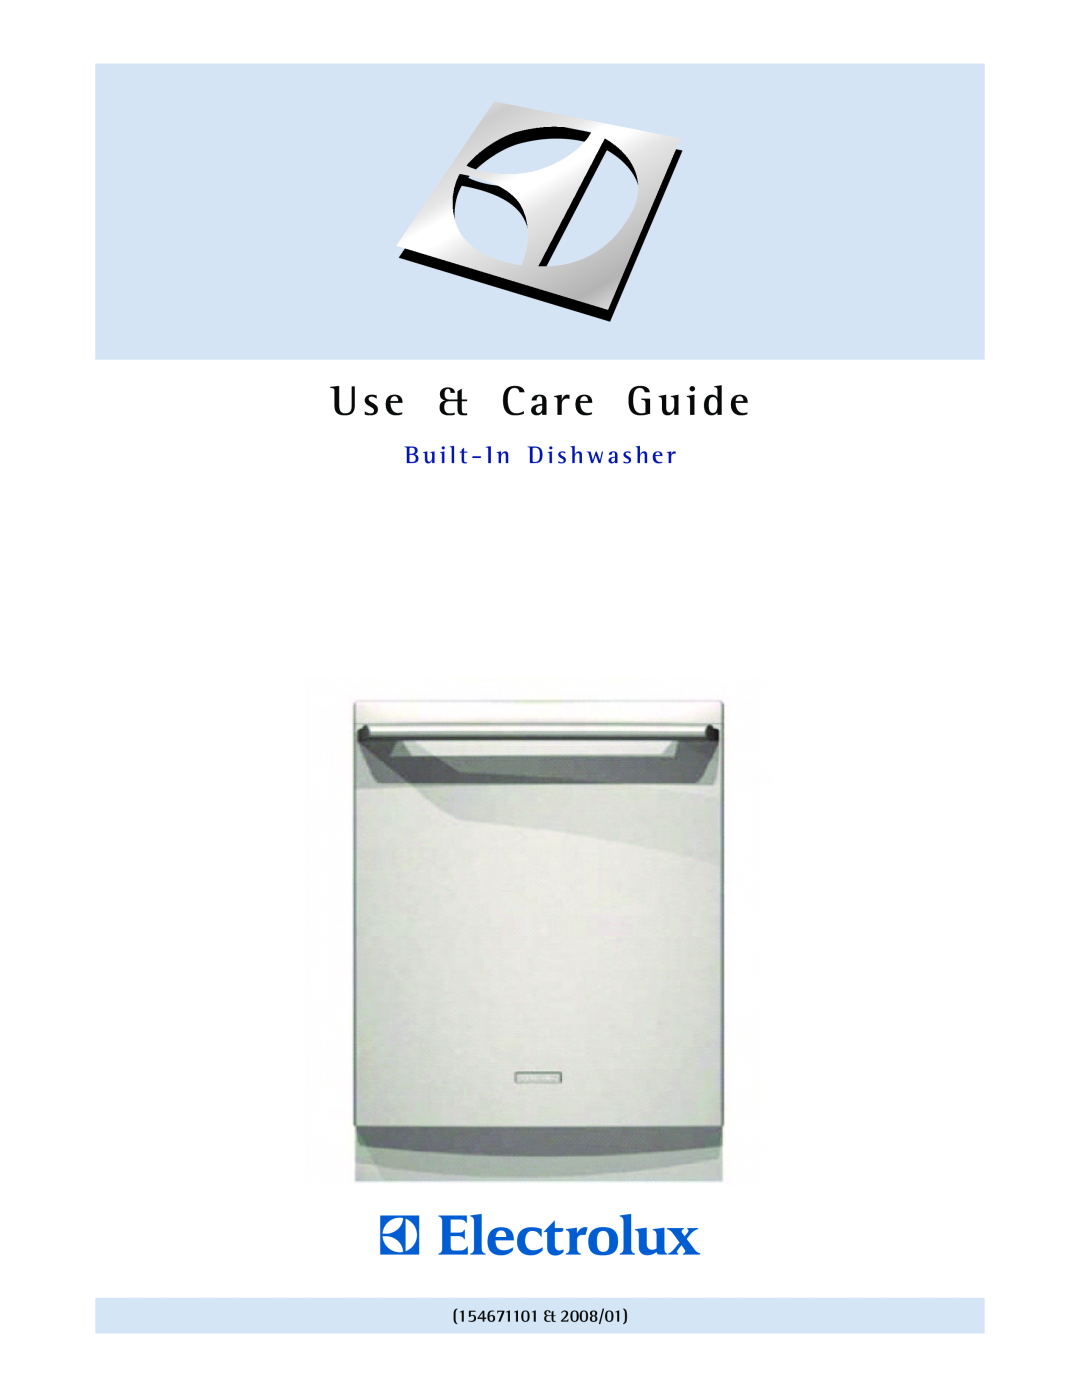 Electrolux 24 manual 154671101 & 2008/01, Use & Care Guide, Guia de Uso y Cuidado Lavavajillas Empotrado 